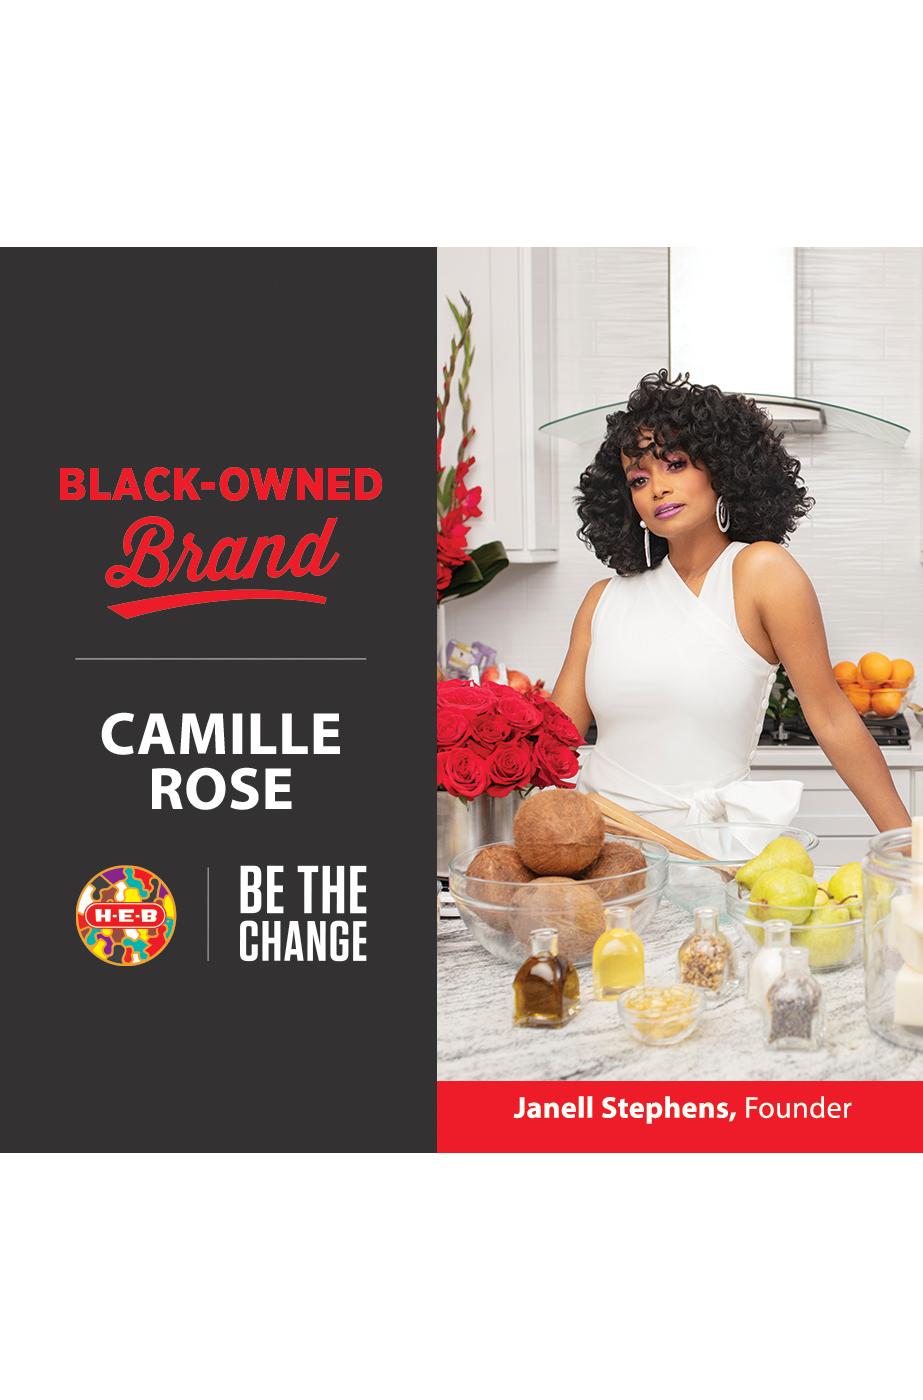 Camille Rose Rosemary Oil Strengthening Hair & Scalp Drops - 1.9 fl oz